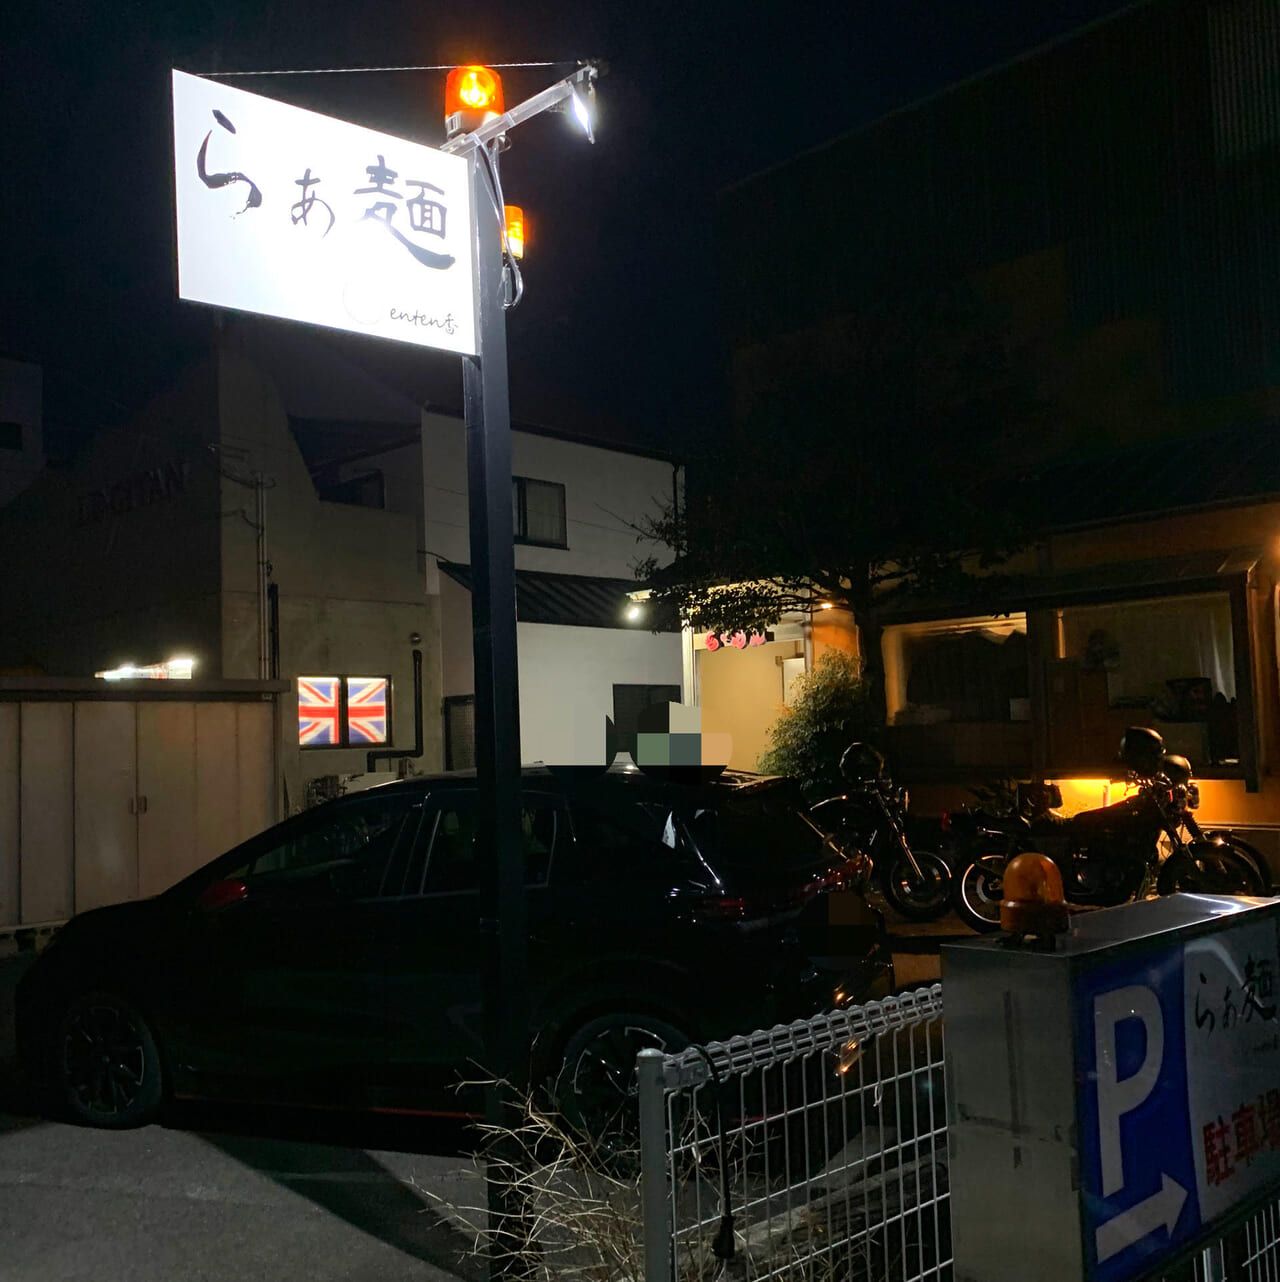 東村の人気ラーメン店「らぁ麺 enten香」の「スタミナニンニク汁なし」が4月28日で終了予定!!